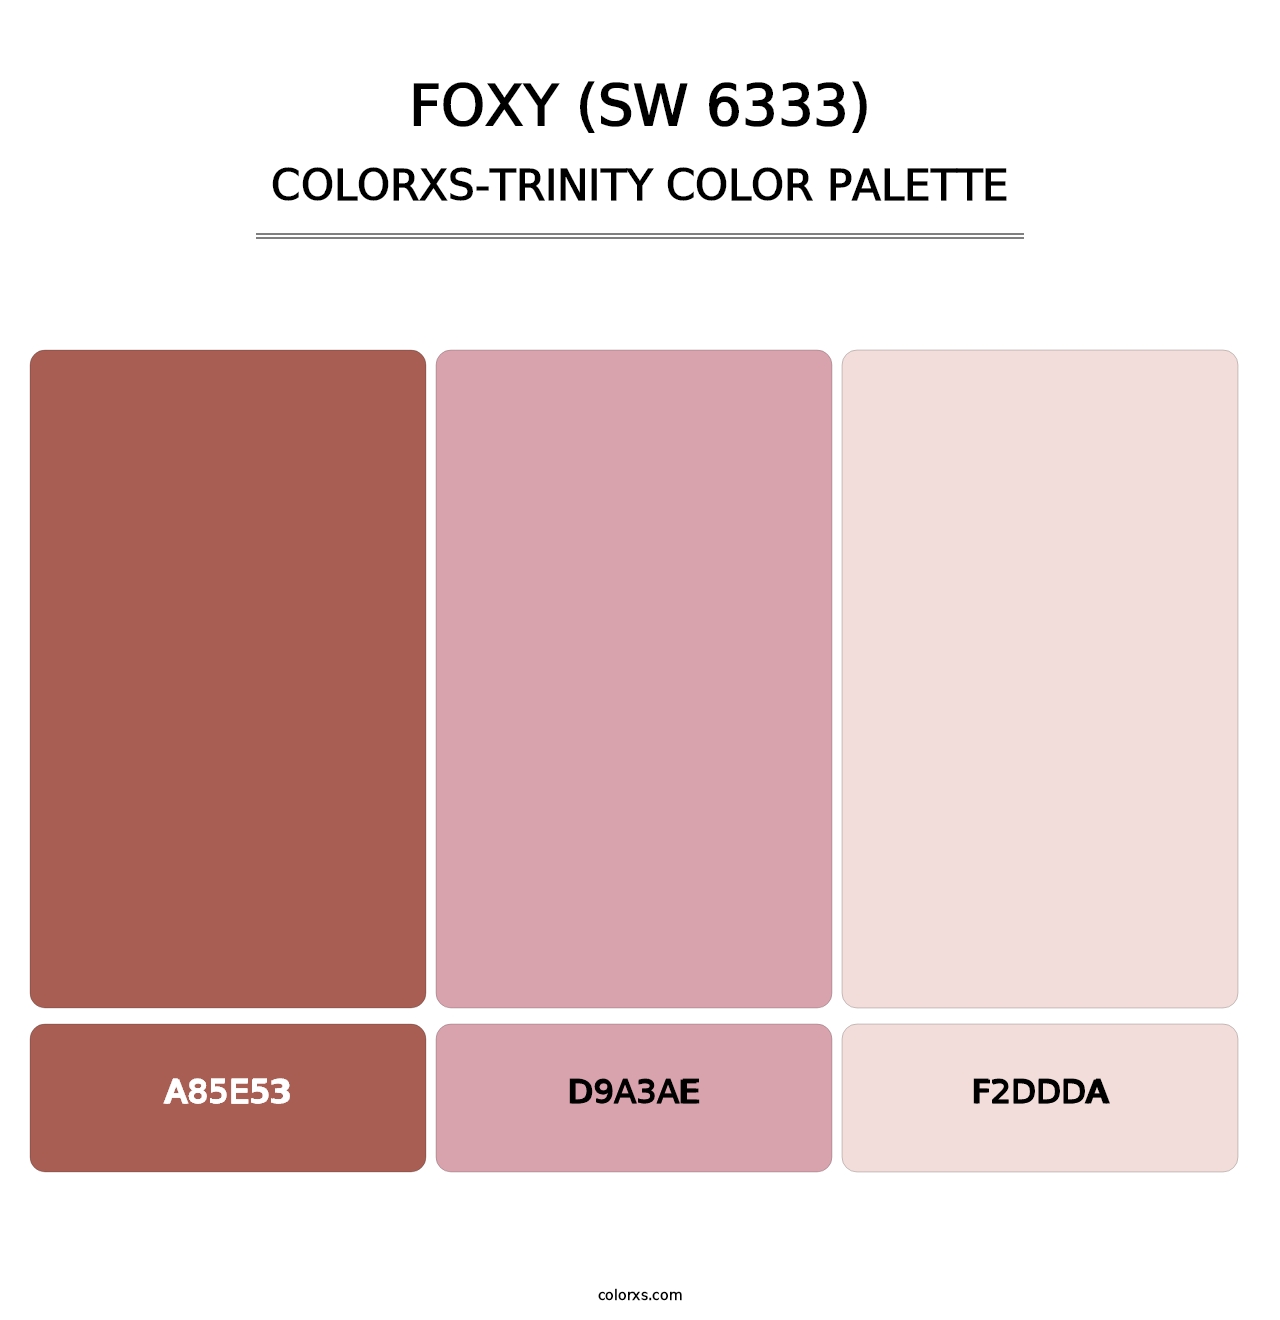 Foxy (SW 6333) - Colorxs Trinity Palette